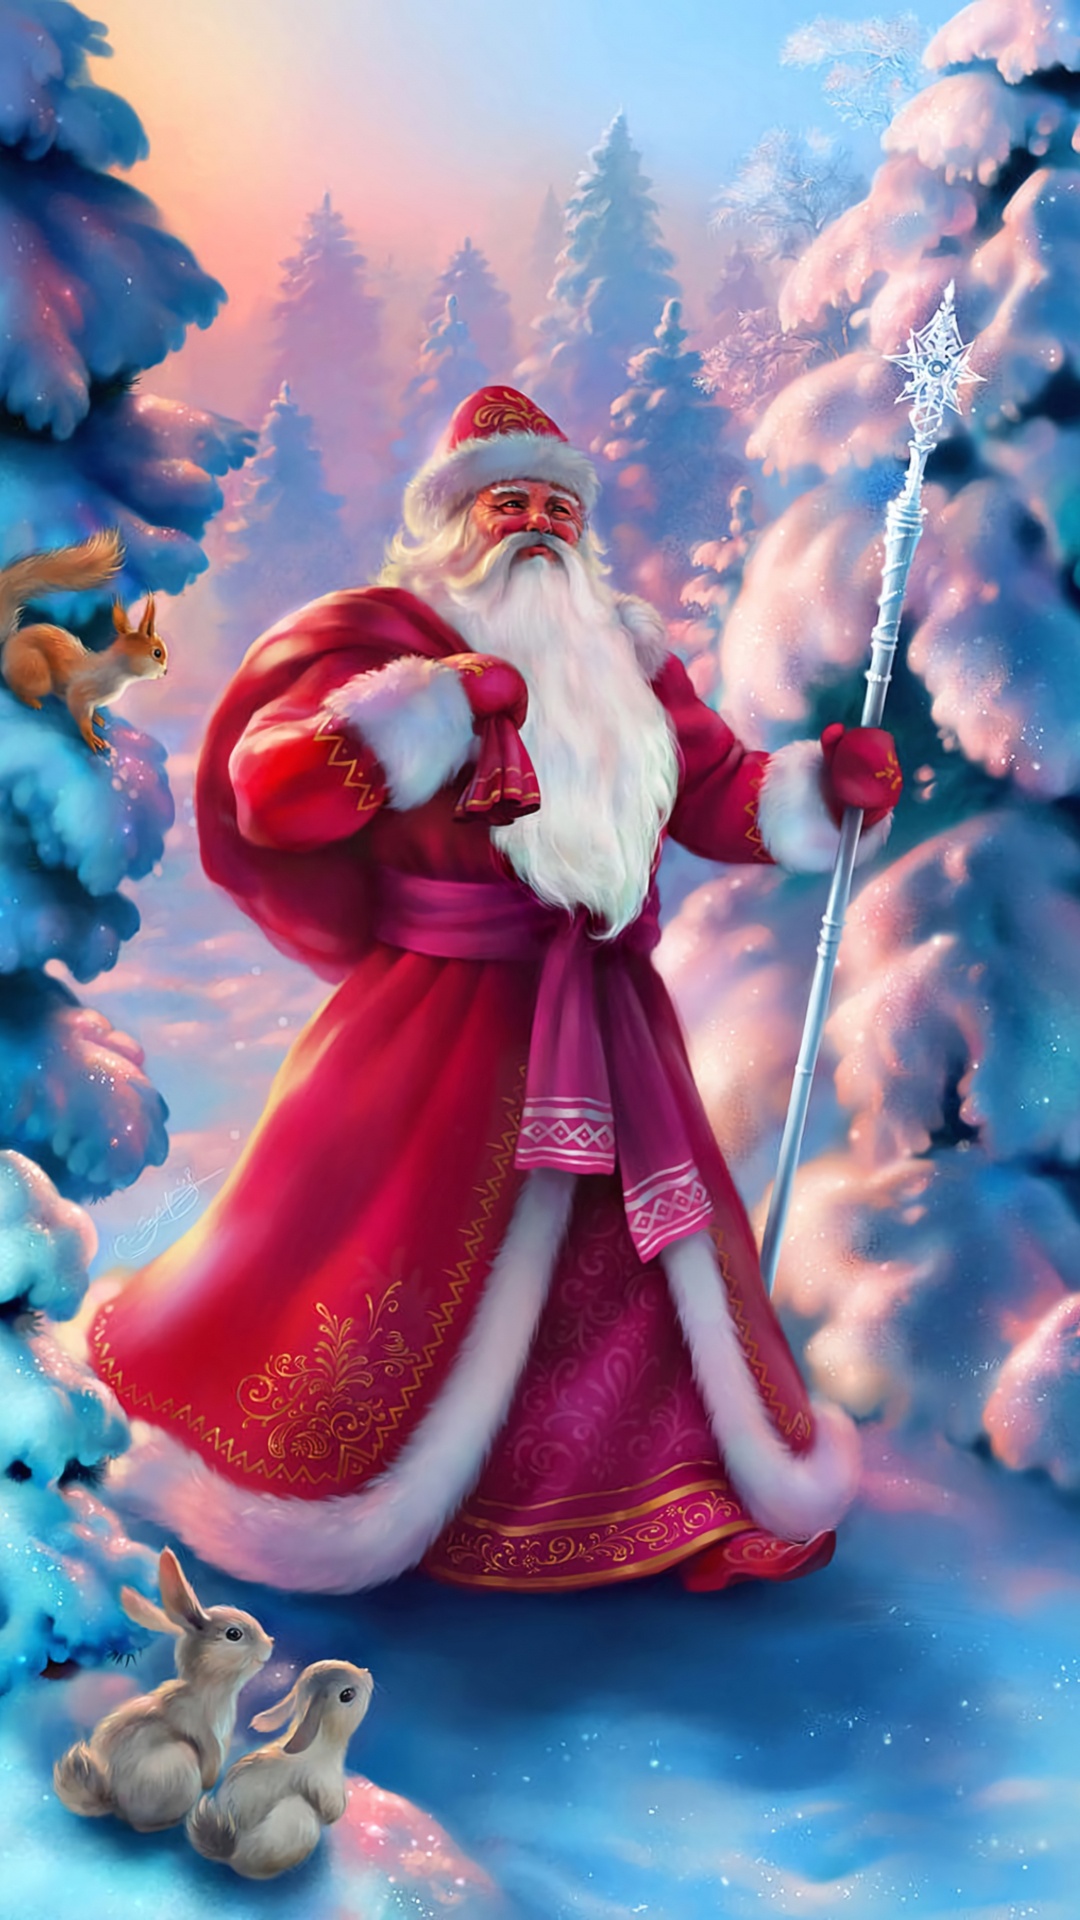 Weihnachtsmann, Ded Moroz, Weihnachten, Animation, Pink. Wallpaper in 1080x1920 Resolution